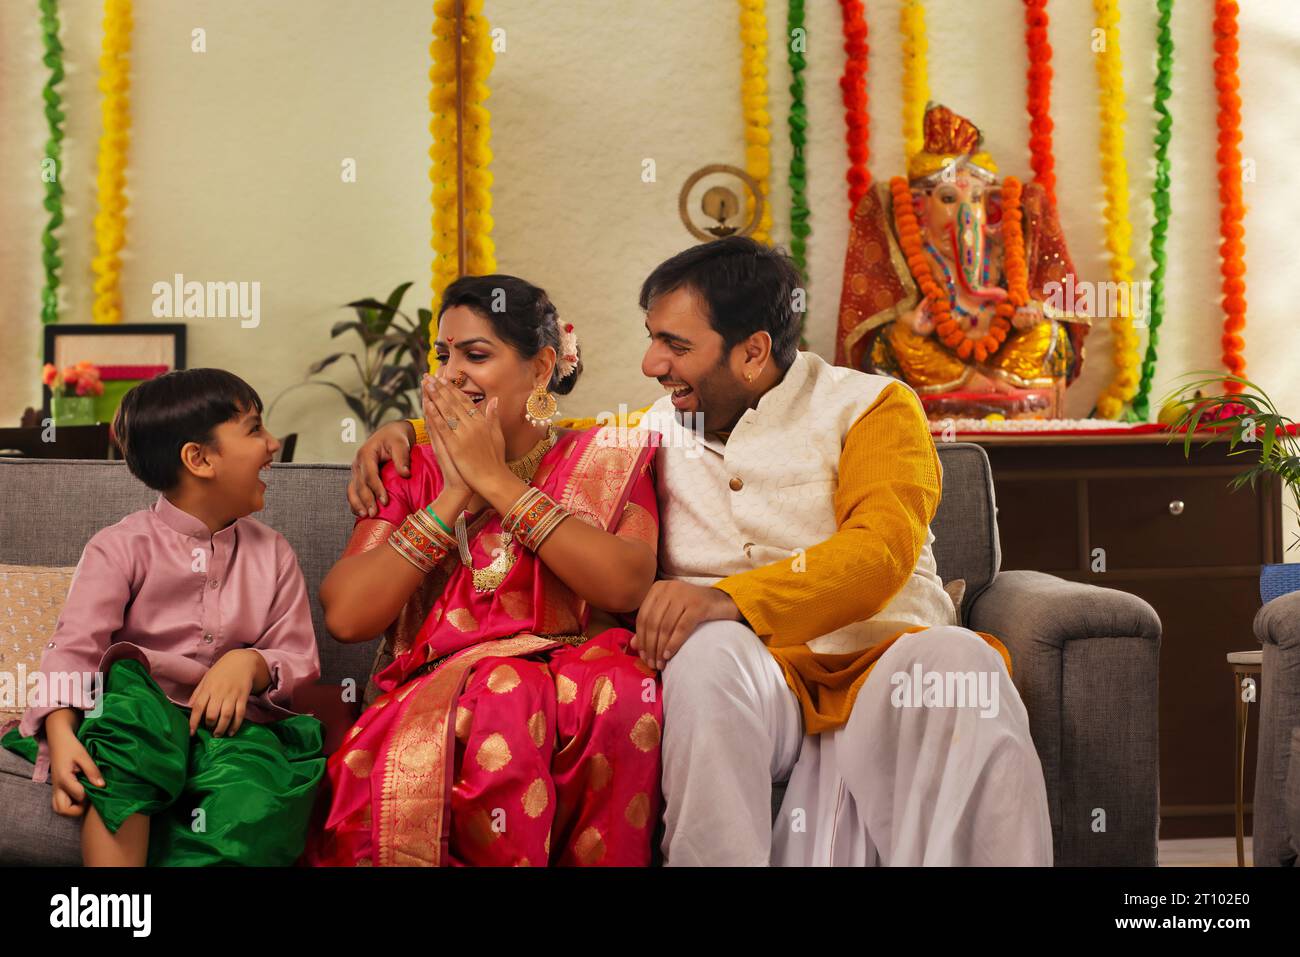 Maharashtrian family celebrating Ganesh Chaturthi Stock Photo